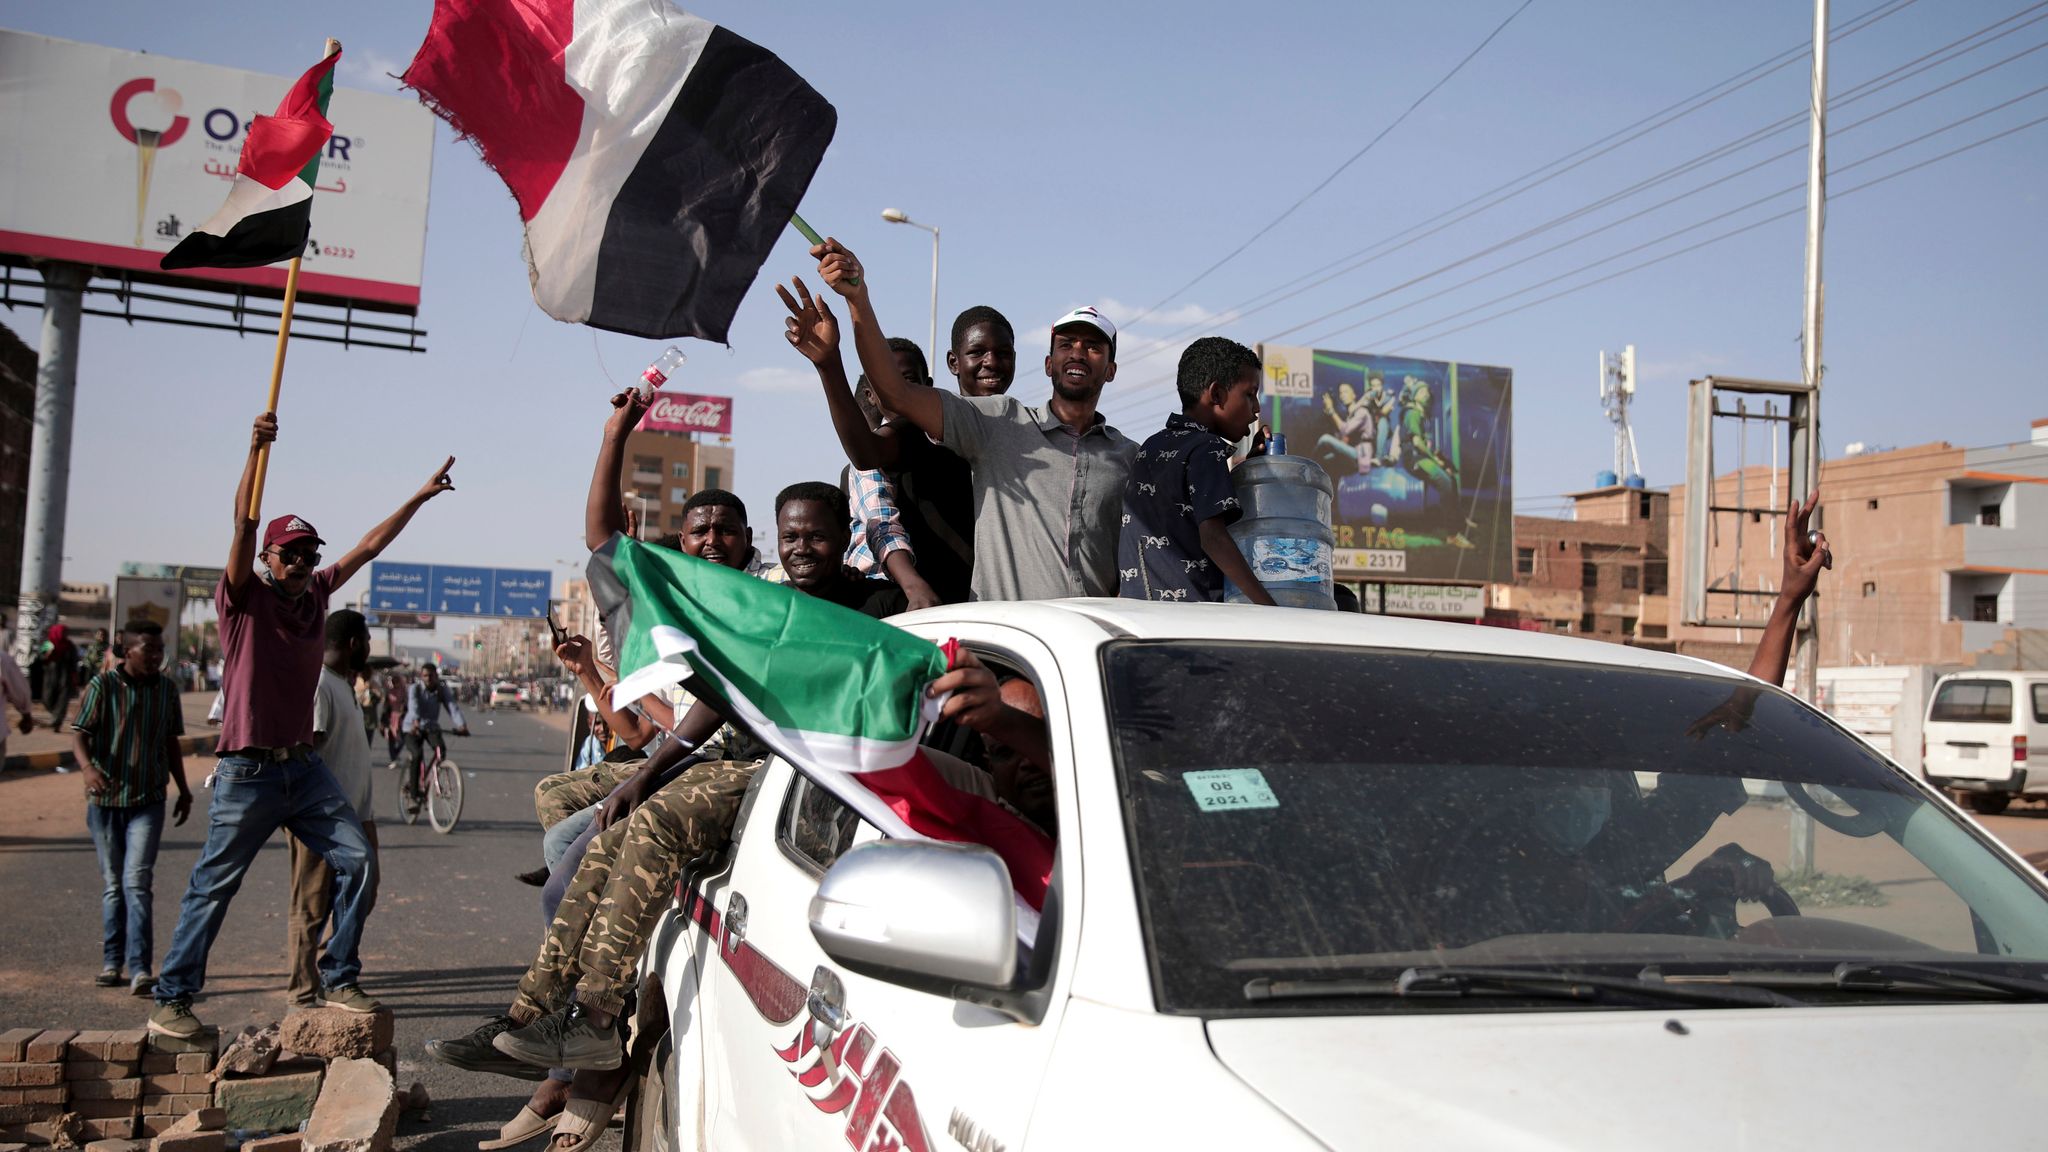 In caroline Khartoum pierce Caroline pierce